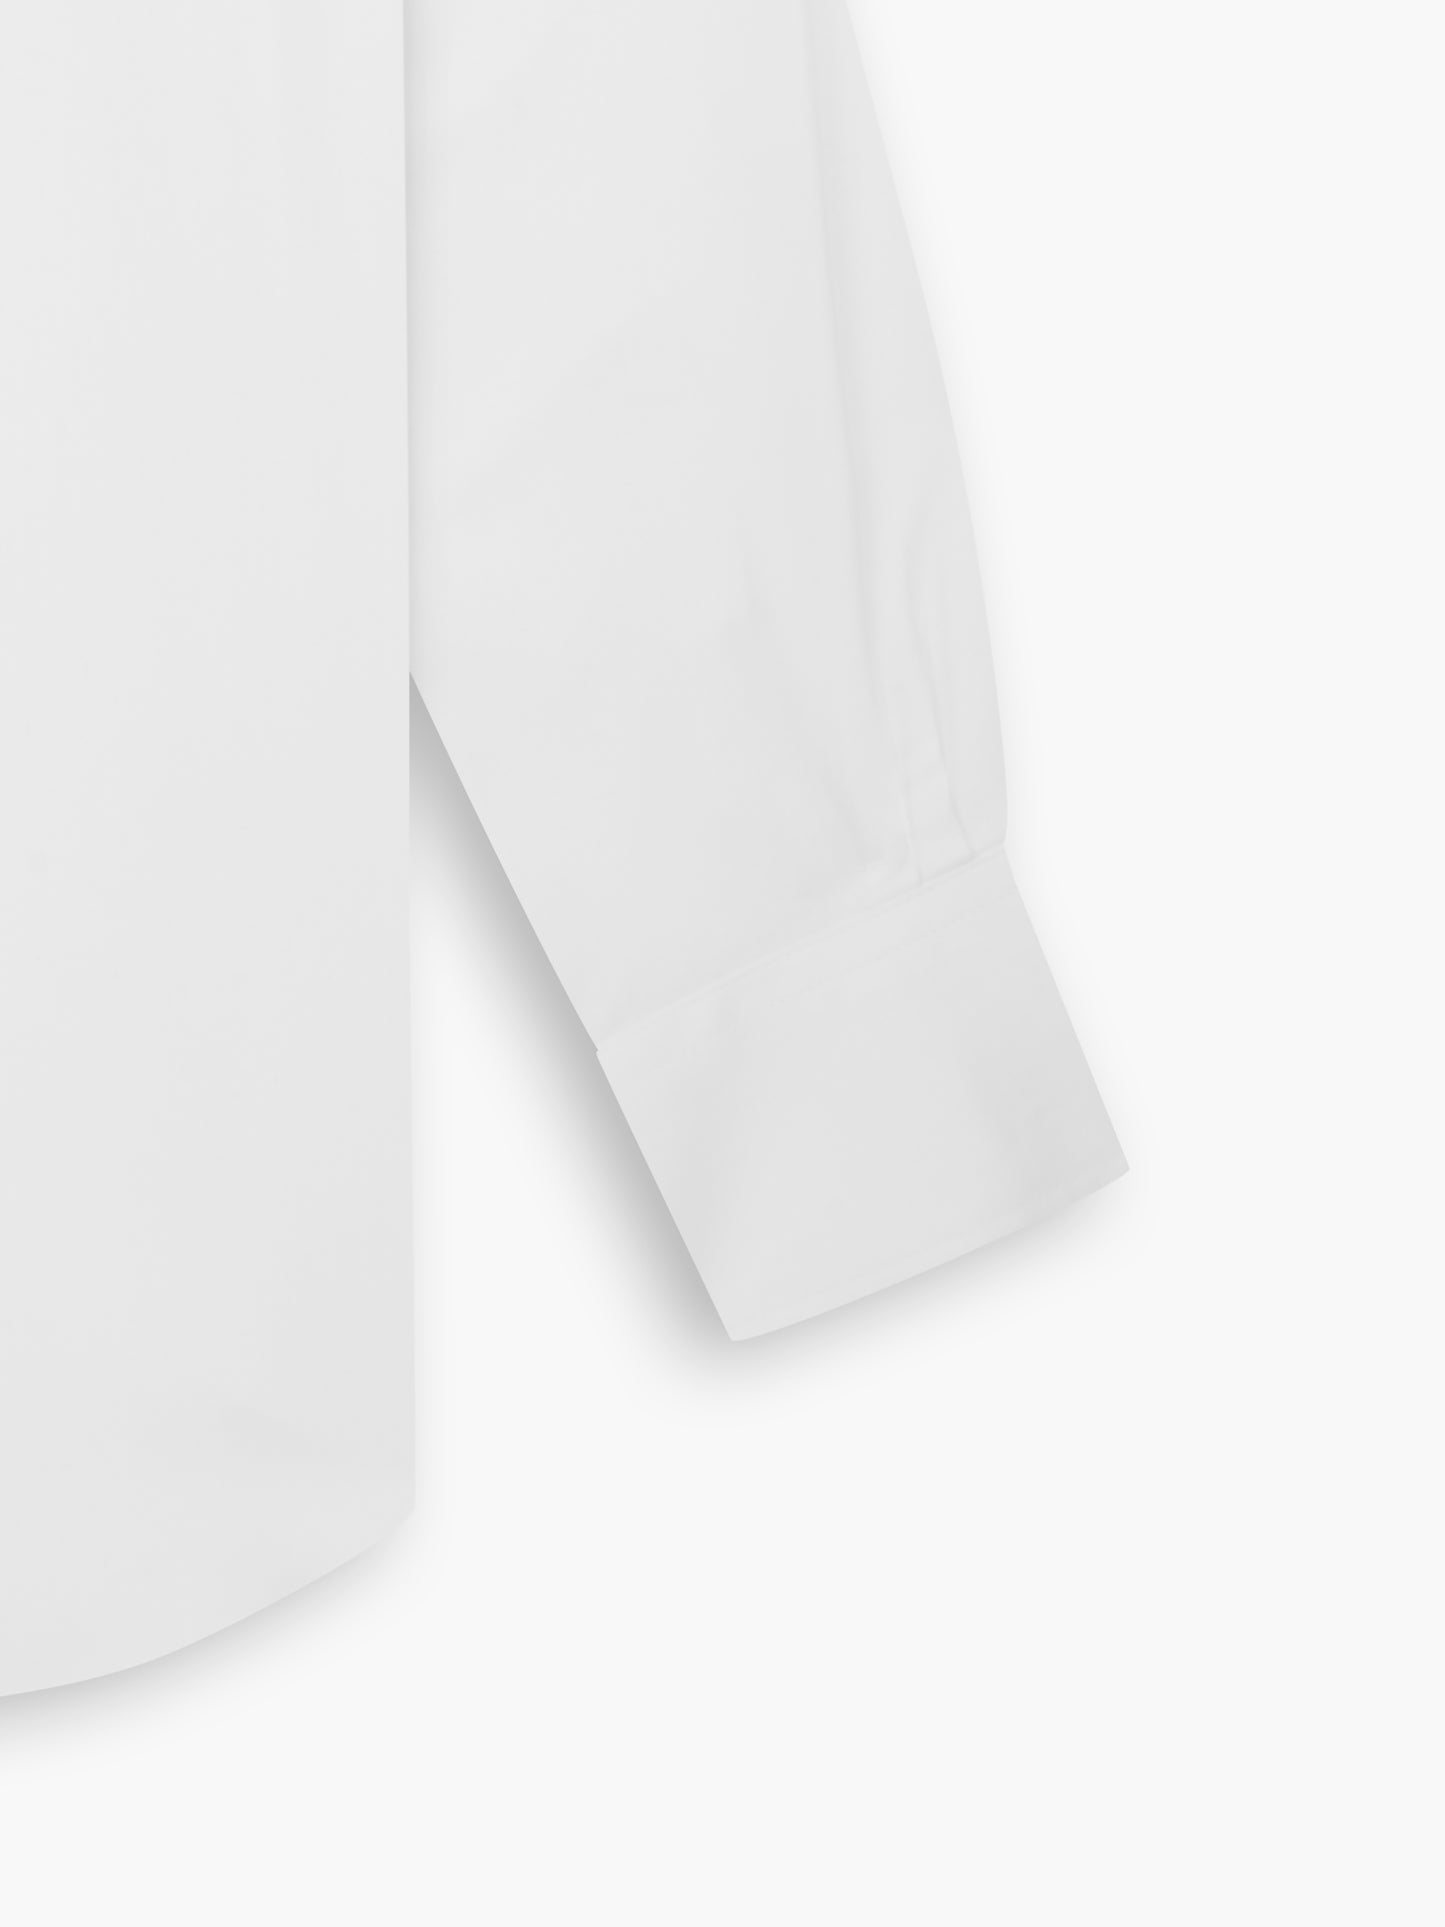 Non-Iron White Twill Slim Fit Single Cuff Classic Collar Shirt